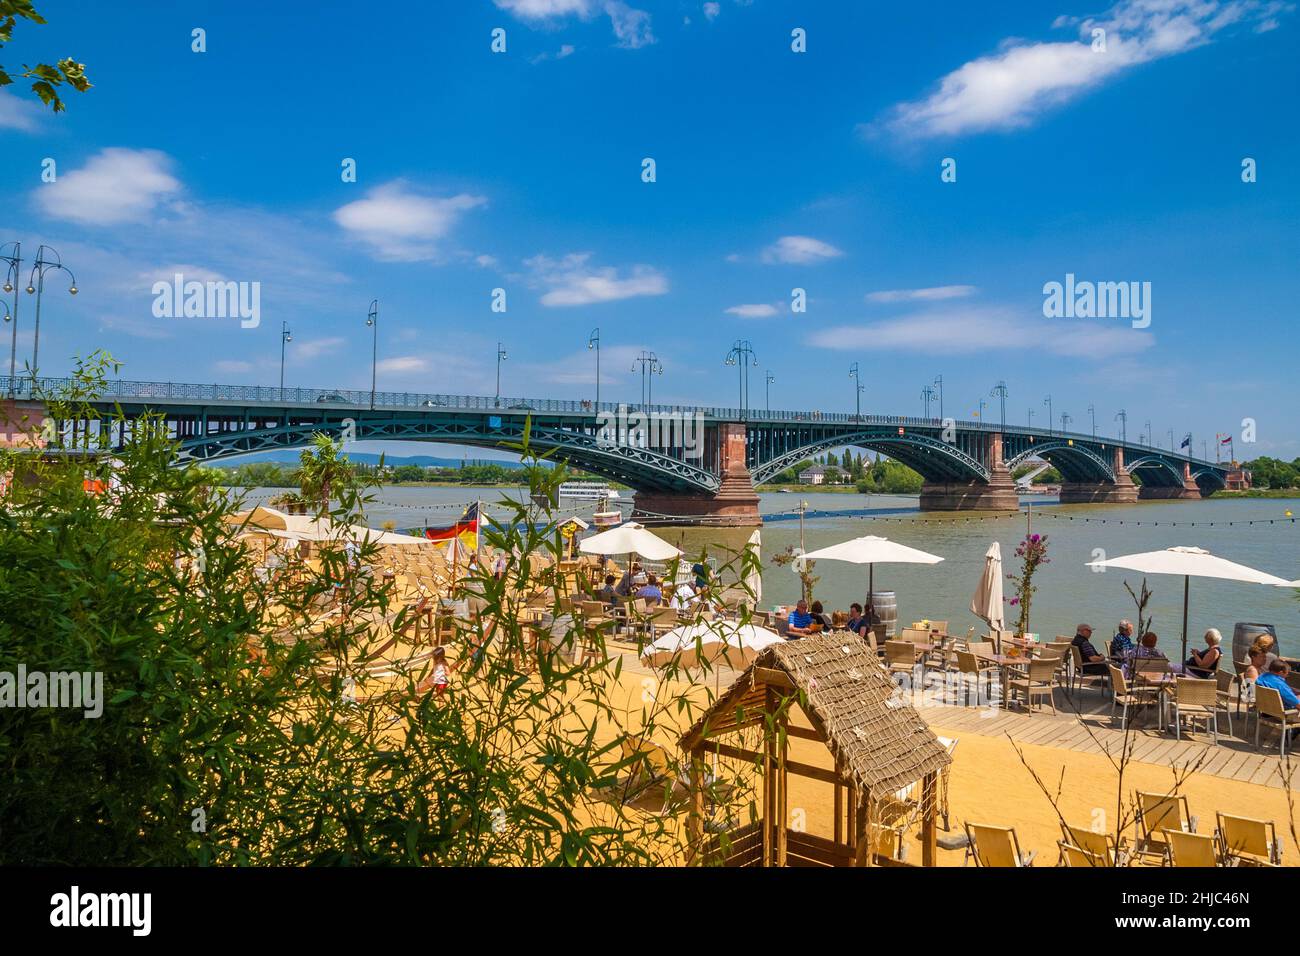 Schöner Blick auf die Theodor-Heuss-Brücke in Mainz, die Brücke zwischen Rheinland-Pfalz und Hessen. Vorne ist die... Stockfoto